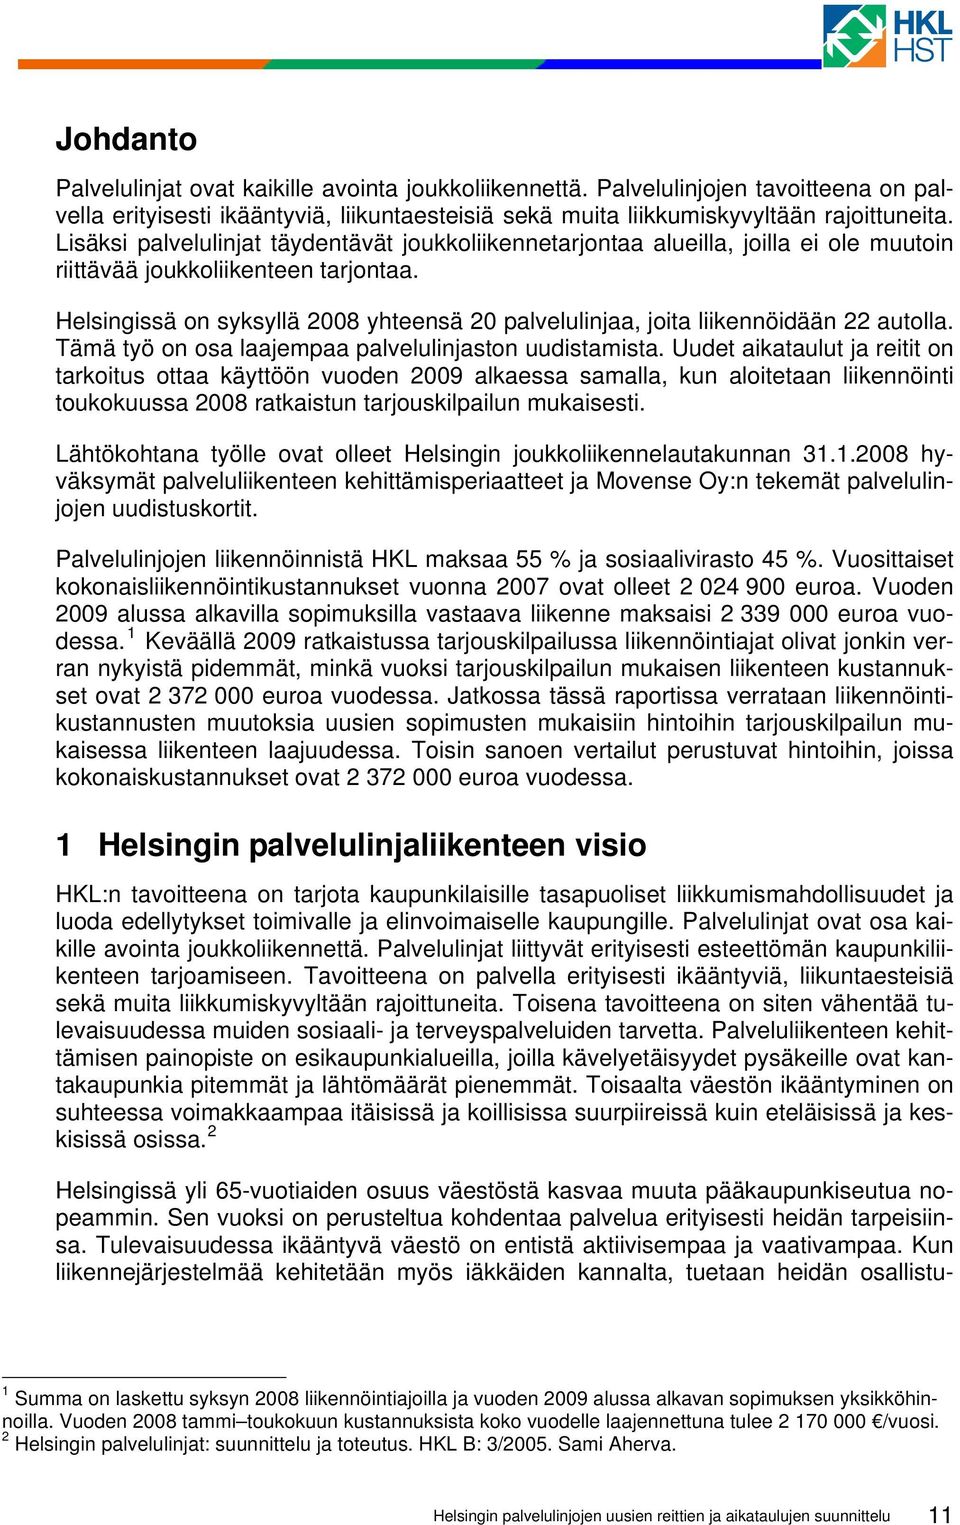 Helsingissä on syksyllä 2008 yhteensä 20 palvelulinjaa, joita liikennöidään 22 autolla. Tämä työ on osa laajempaa palvelulinjaston uudistamista.